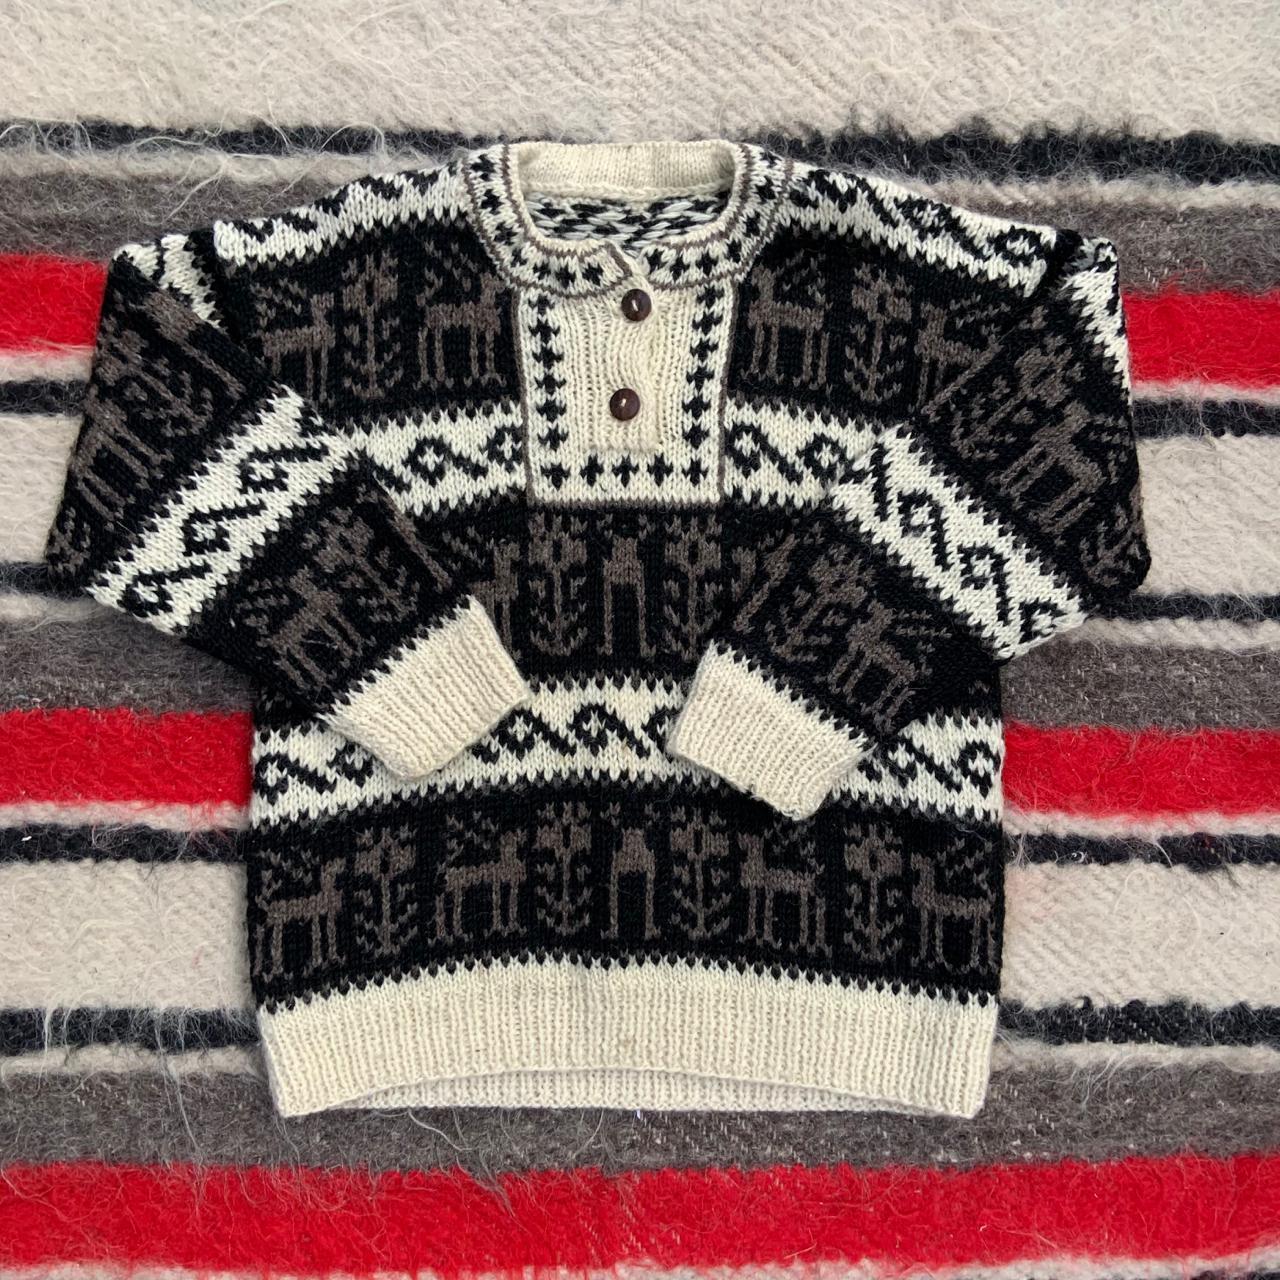 Vintage 1970s 1980s Wool Knit Pullover Jumper. Size... - Depop